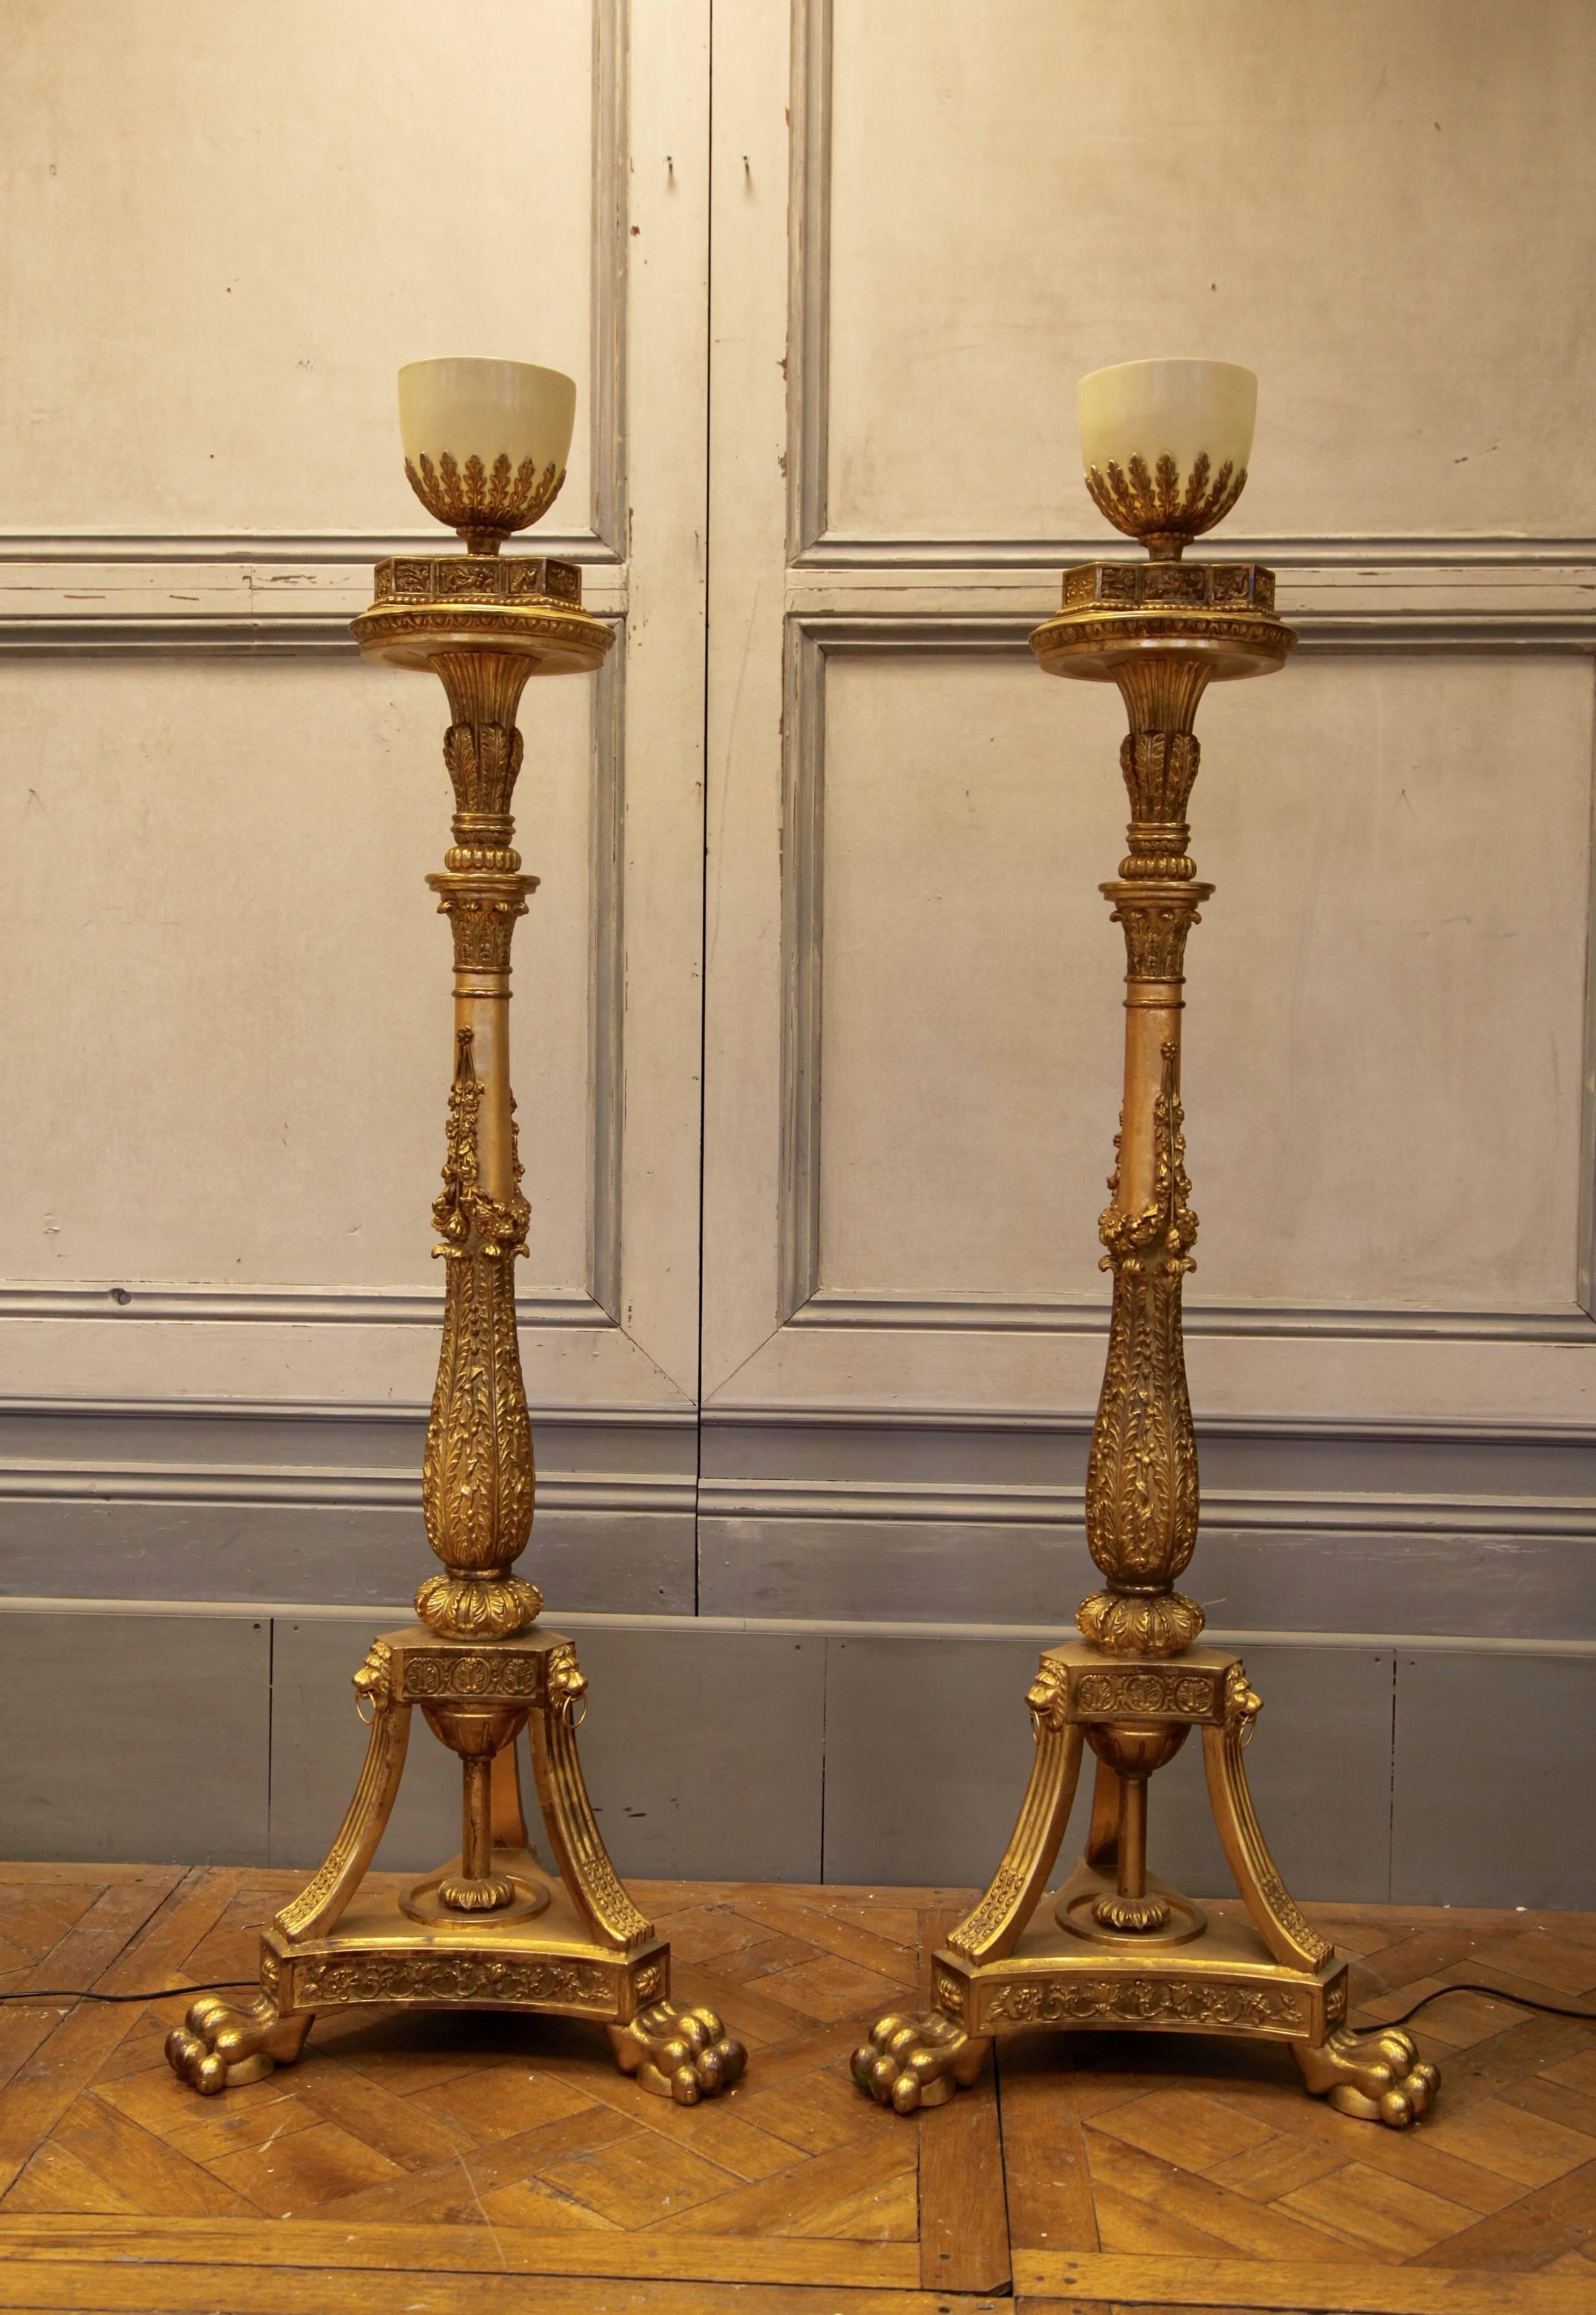 Beeindruckende Fackelsockel im Louis-XVI-Stil mit Anzündern. Wunderschön von Hand geschnitzt und vergoldet nach traditionellen Methoden in einem antiken Finish.